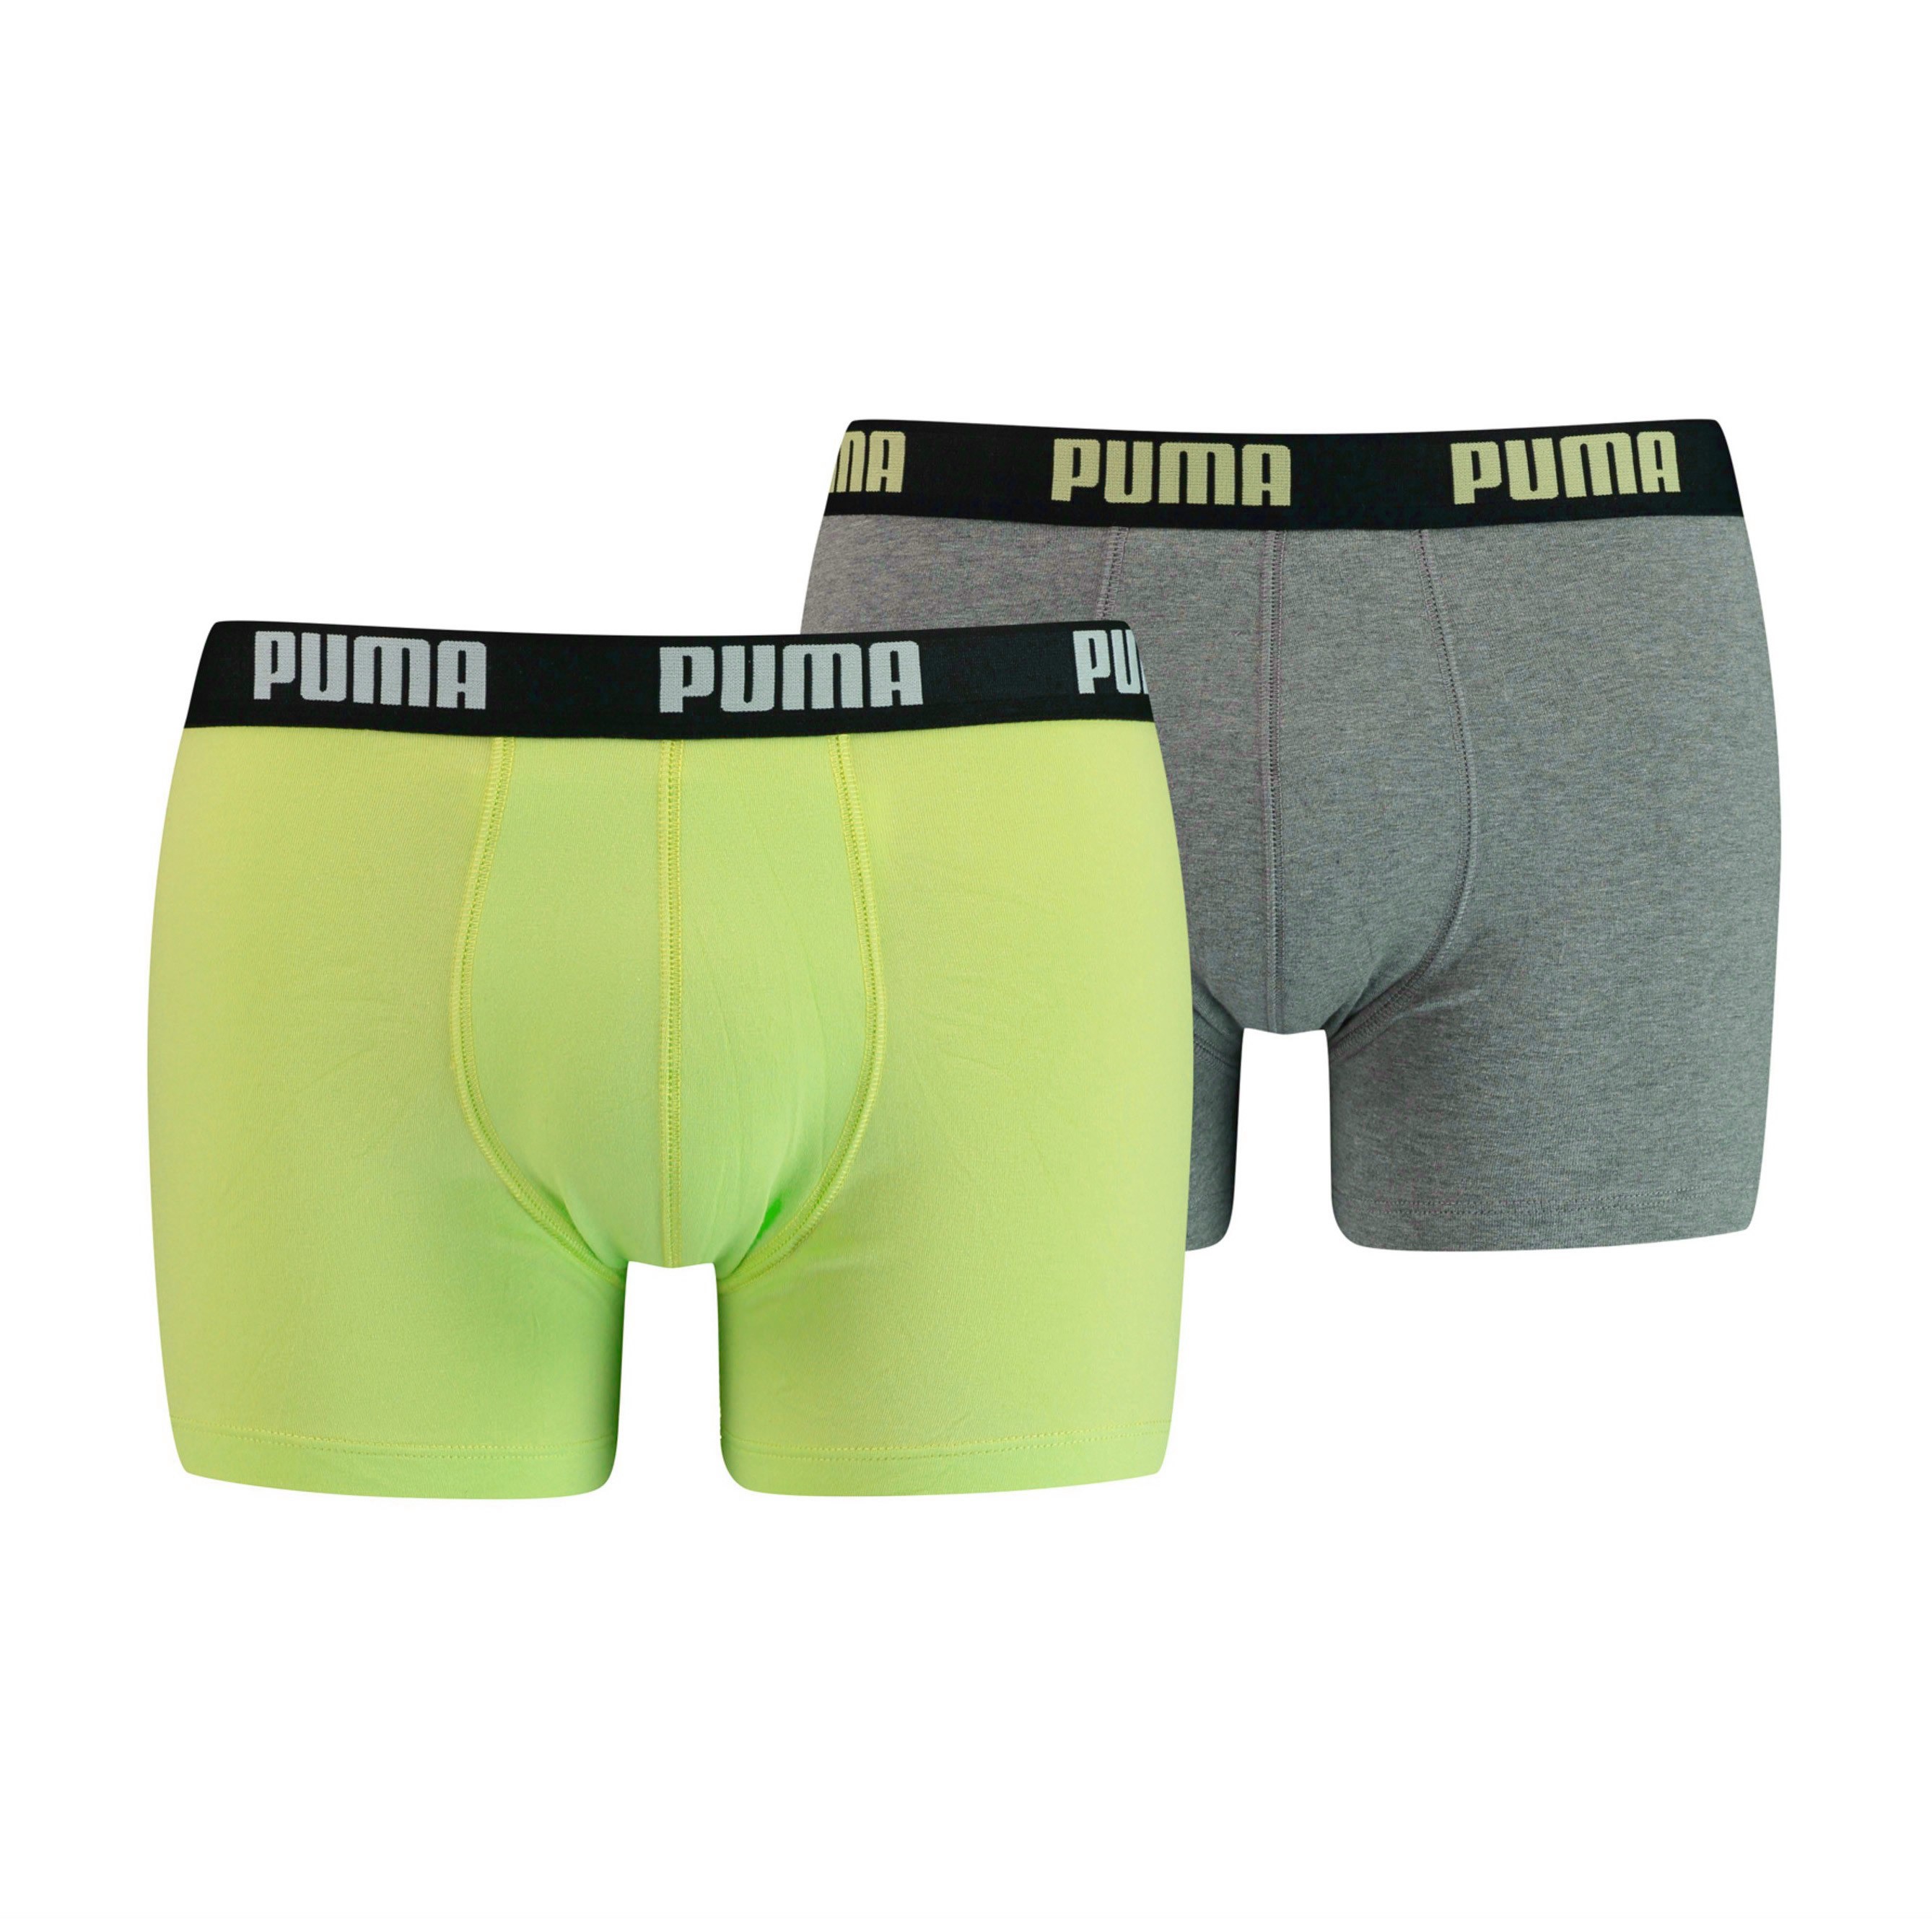 Basic Boxer Shorts 2 Pack - Puma : sale of shorts, Sho...